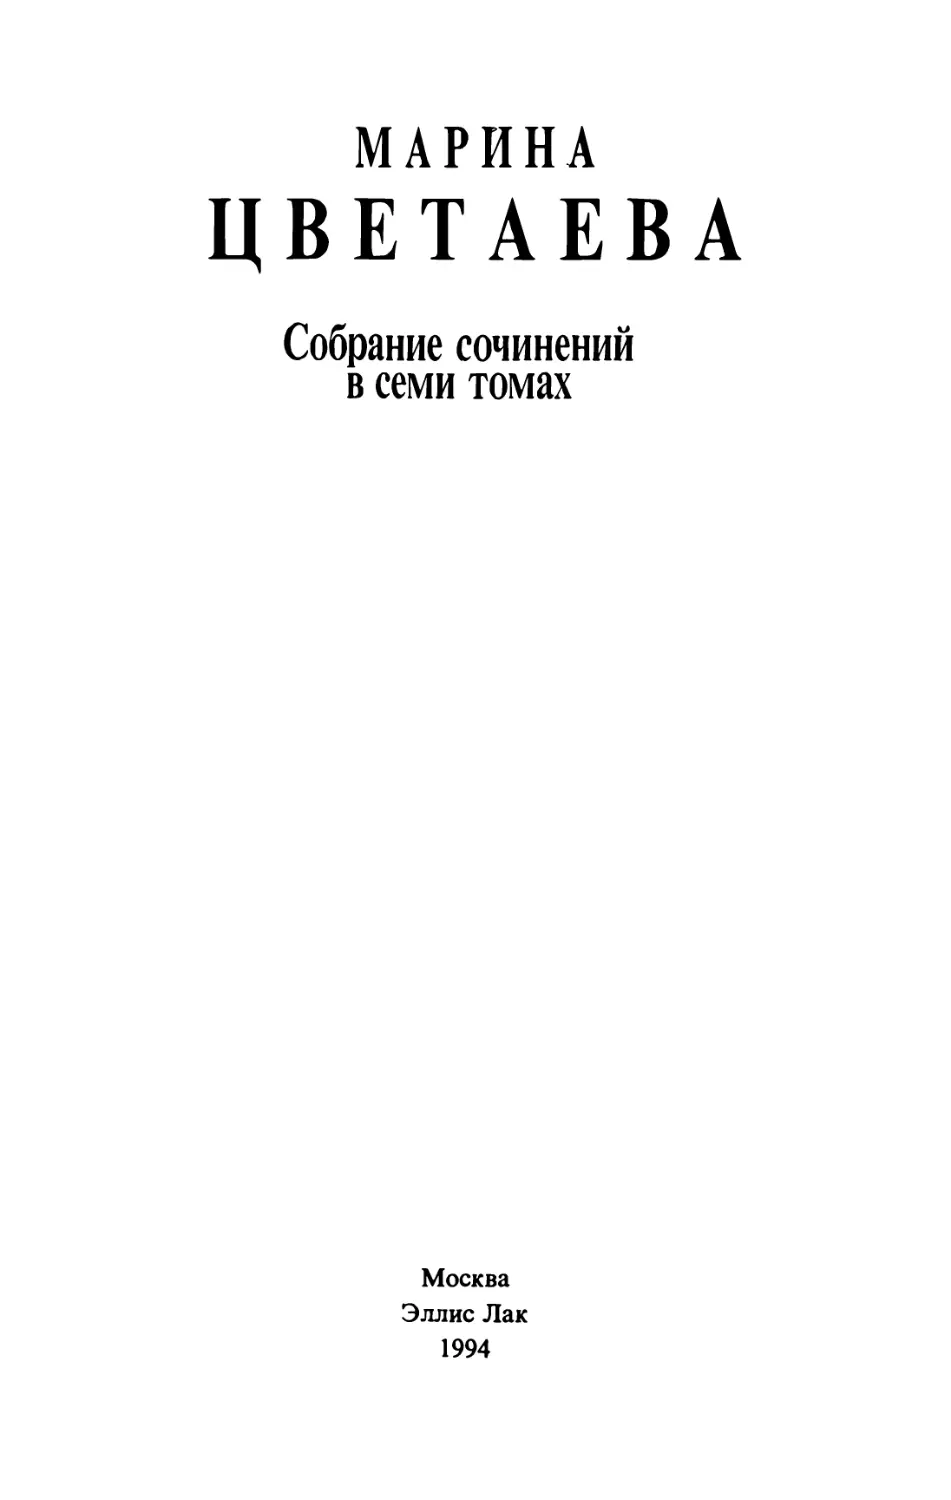 ЦВЕТАЕВА М. И. Собрание сочинений в семи томах